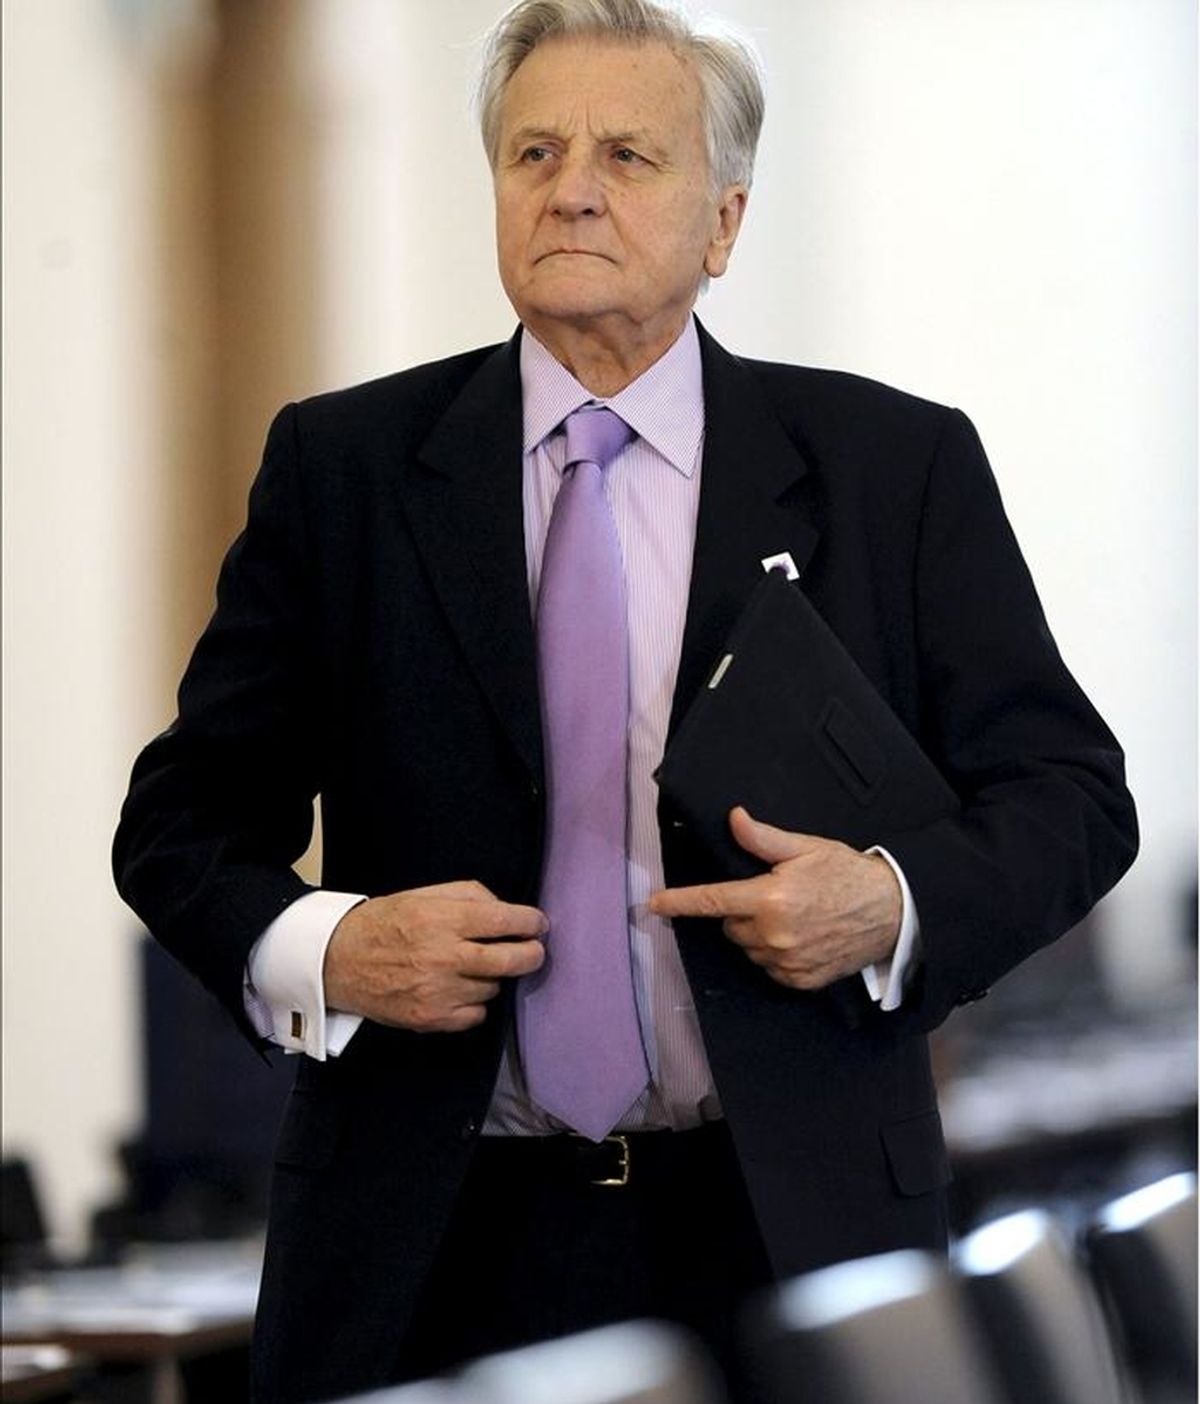 El presidente del Banco Central Europeo (BCE), el francés Jean-Claude Trichet, ganó el año pasado 367.863 euros, un 2 % más que en 2009 (360.612 euros), según el informe anual de 2010 que la entidad publicó hoy. EFE/Archivo